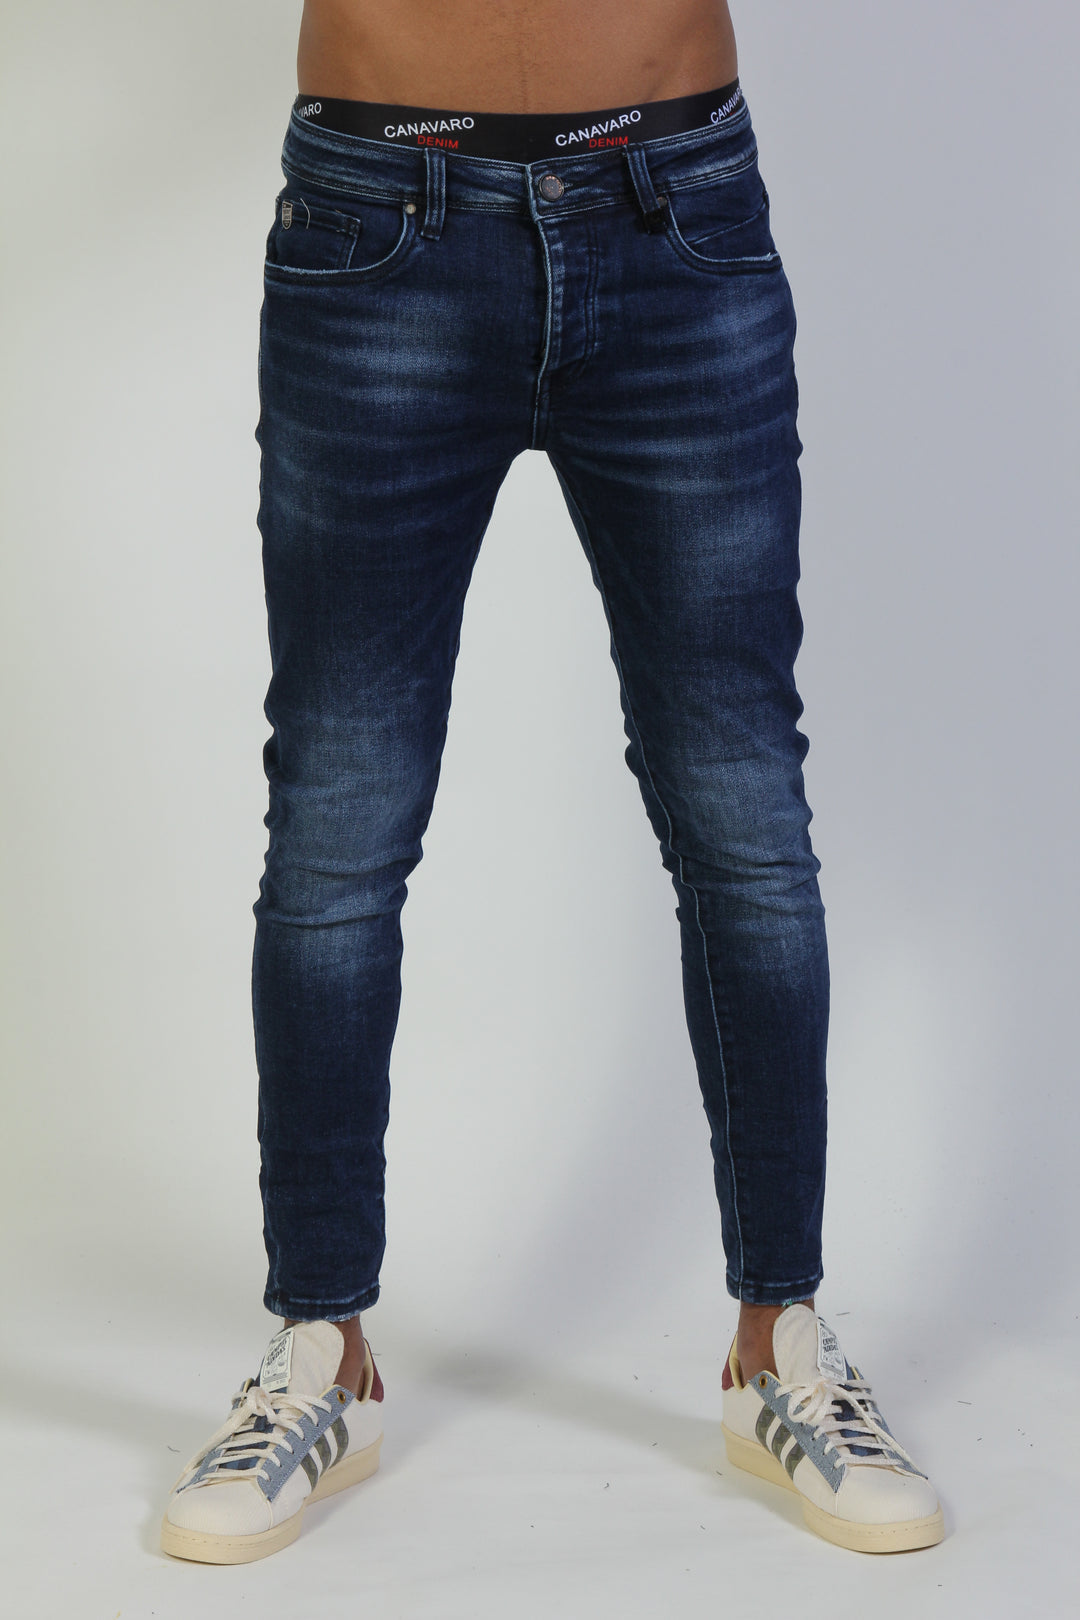 0018 ג'ינס סופר סקיני - canavaro jeans